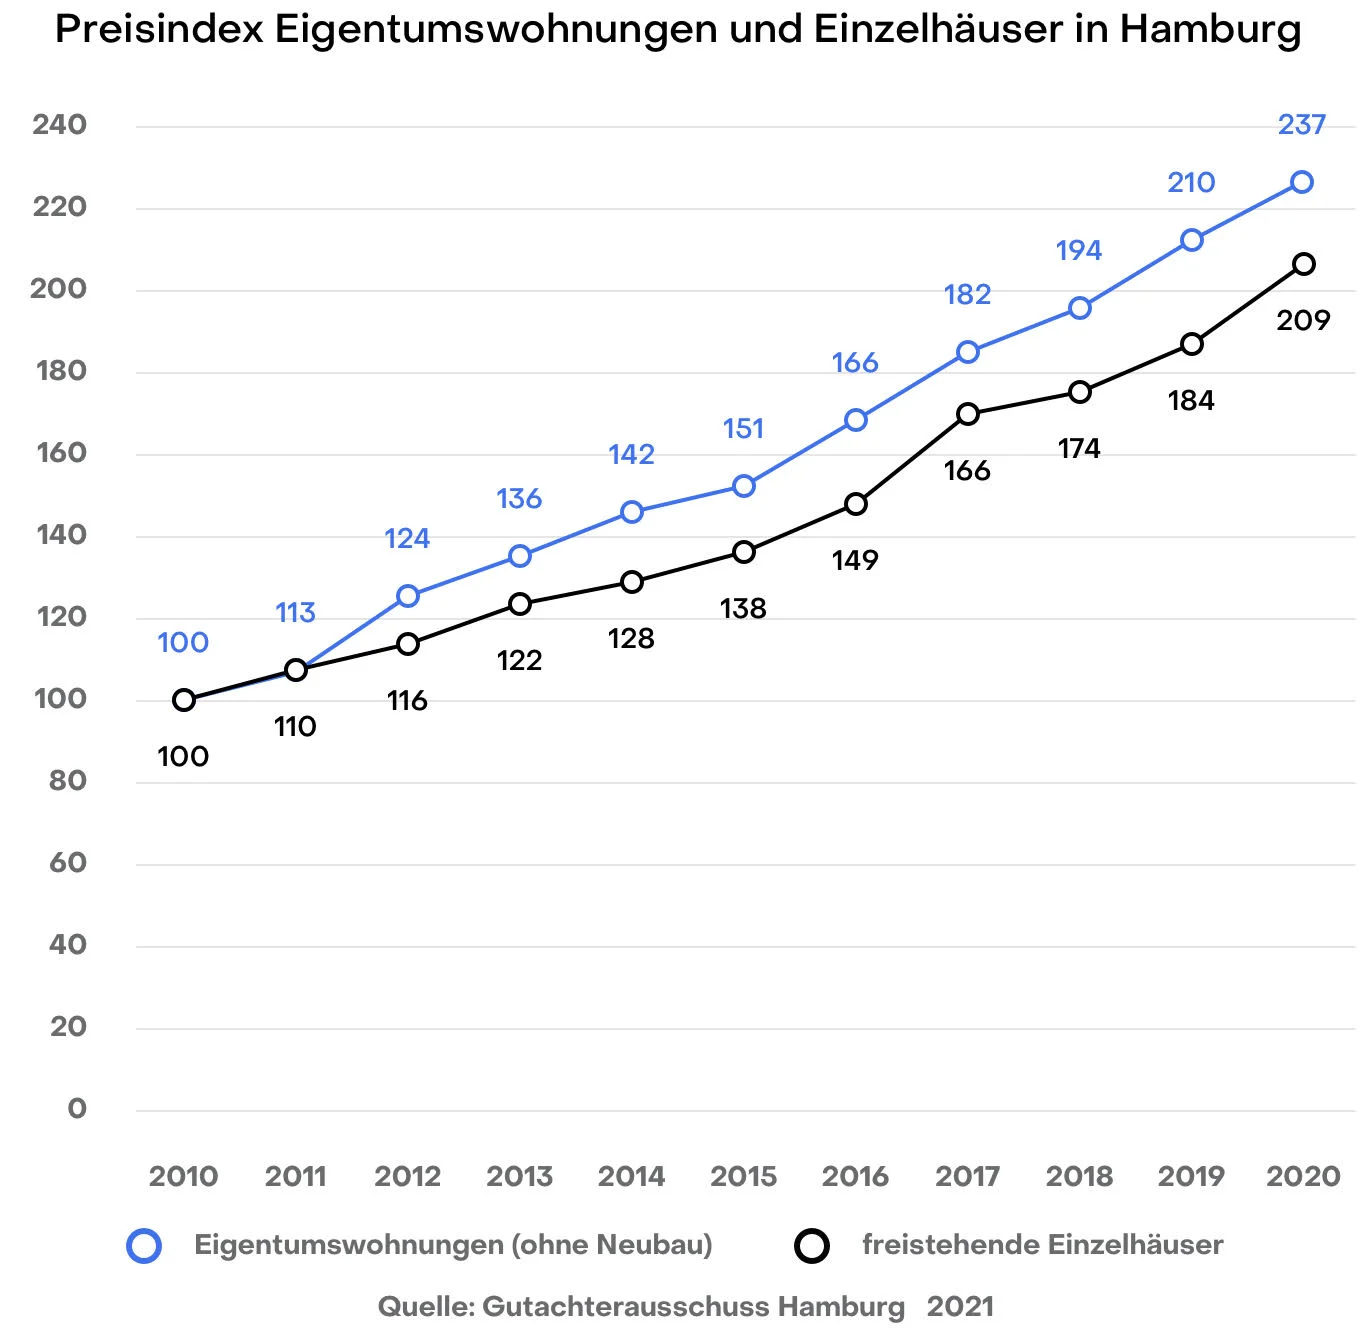 Preisindex Eigentumswohnungen und Häuser in Hamburg, Gutachterausschuss 2020